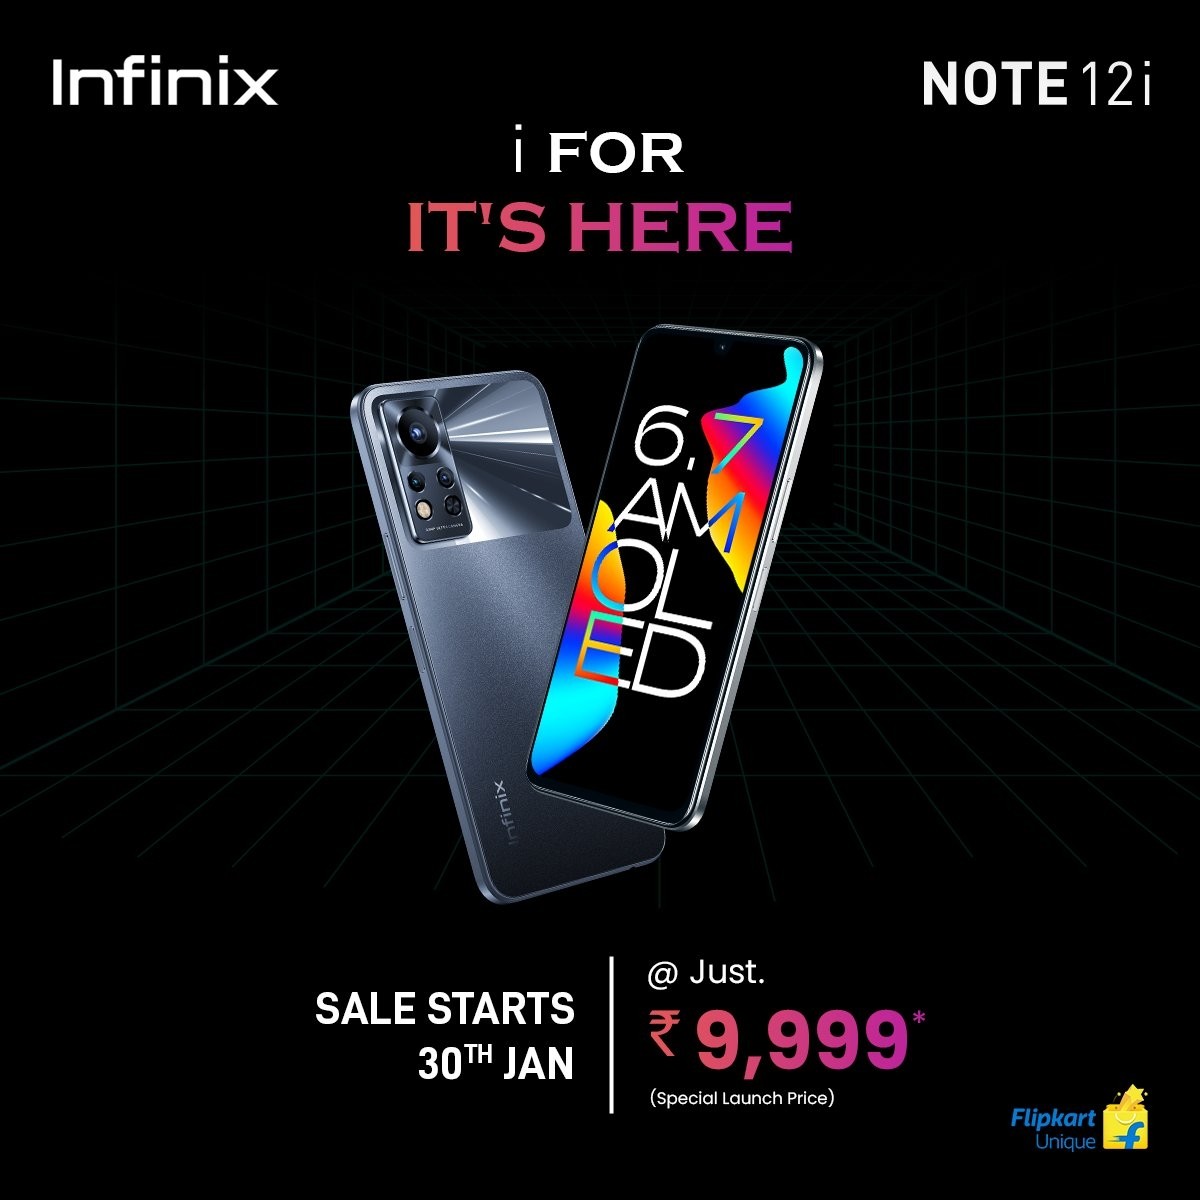 اینفینیکس Note 12i را به هند می آورد، فروش آن از 30 ژانویه آغاز می شود